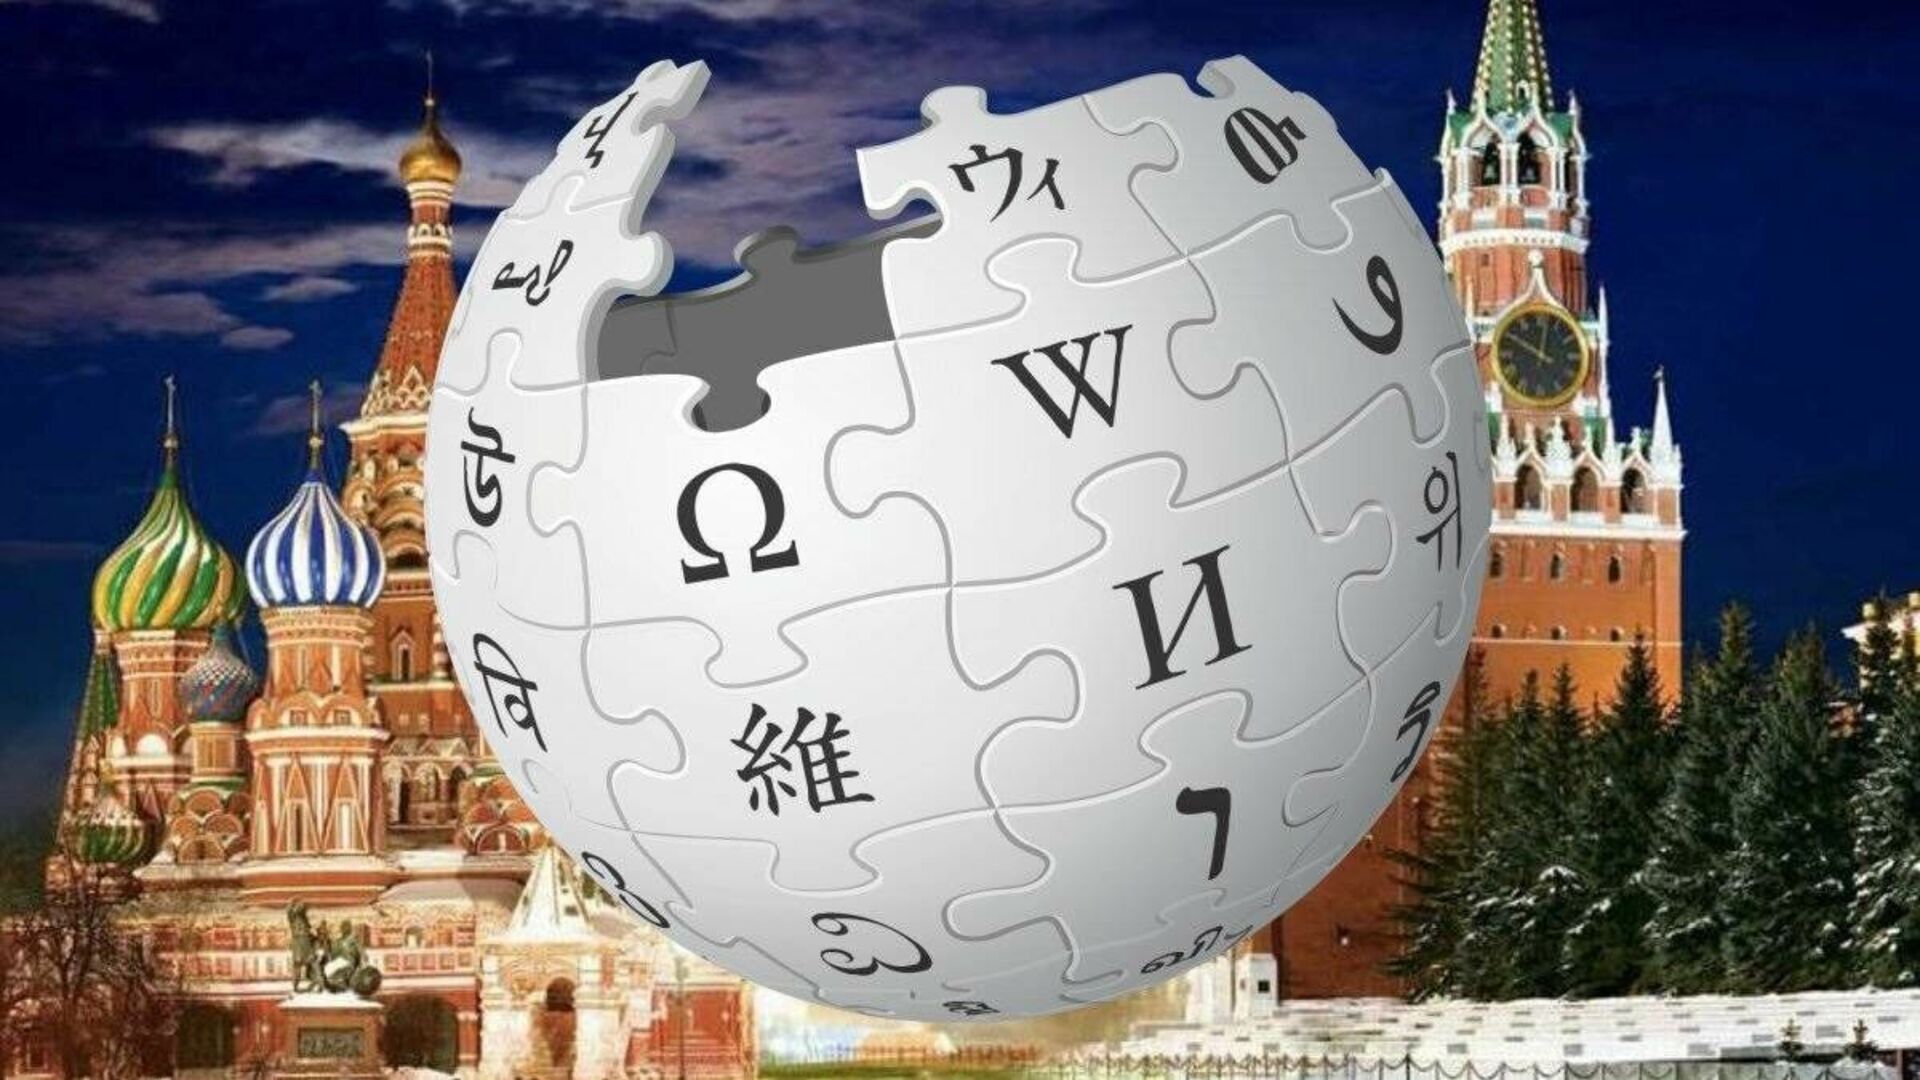 Российская википедия аналог